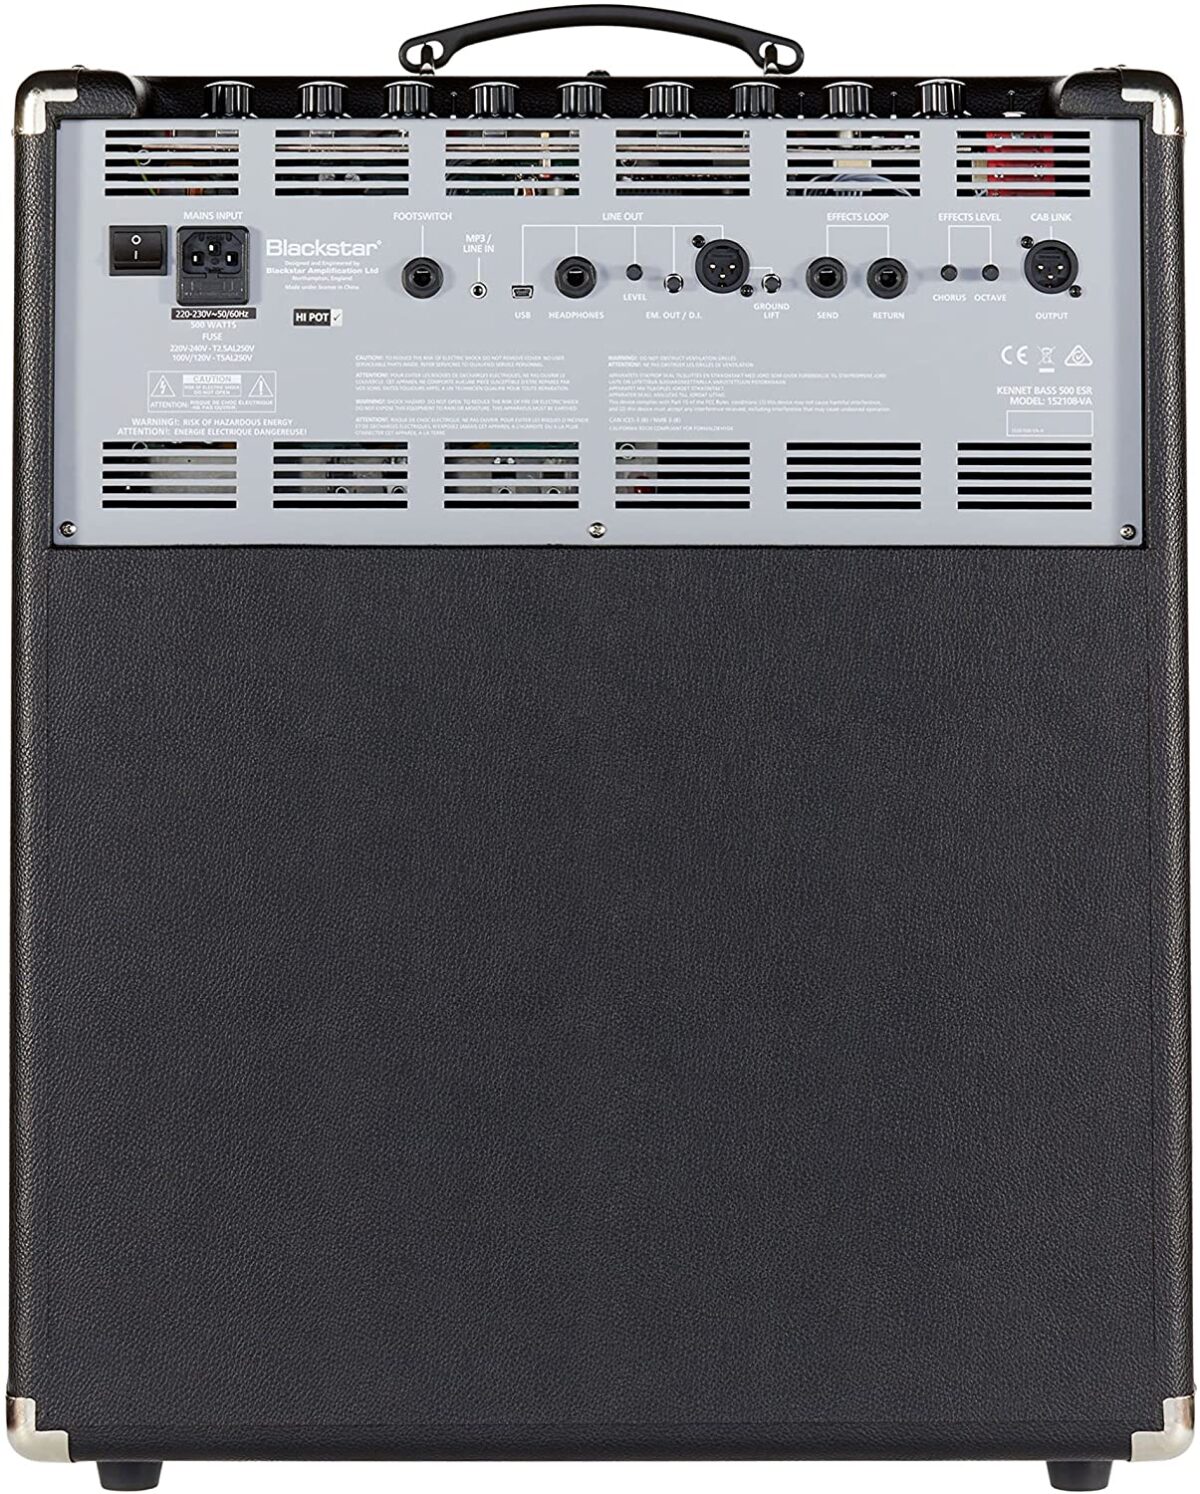 Blackstar Unity Bass 500 Watt Amplifier